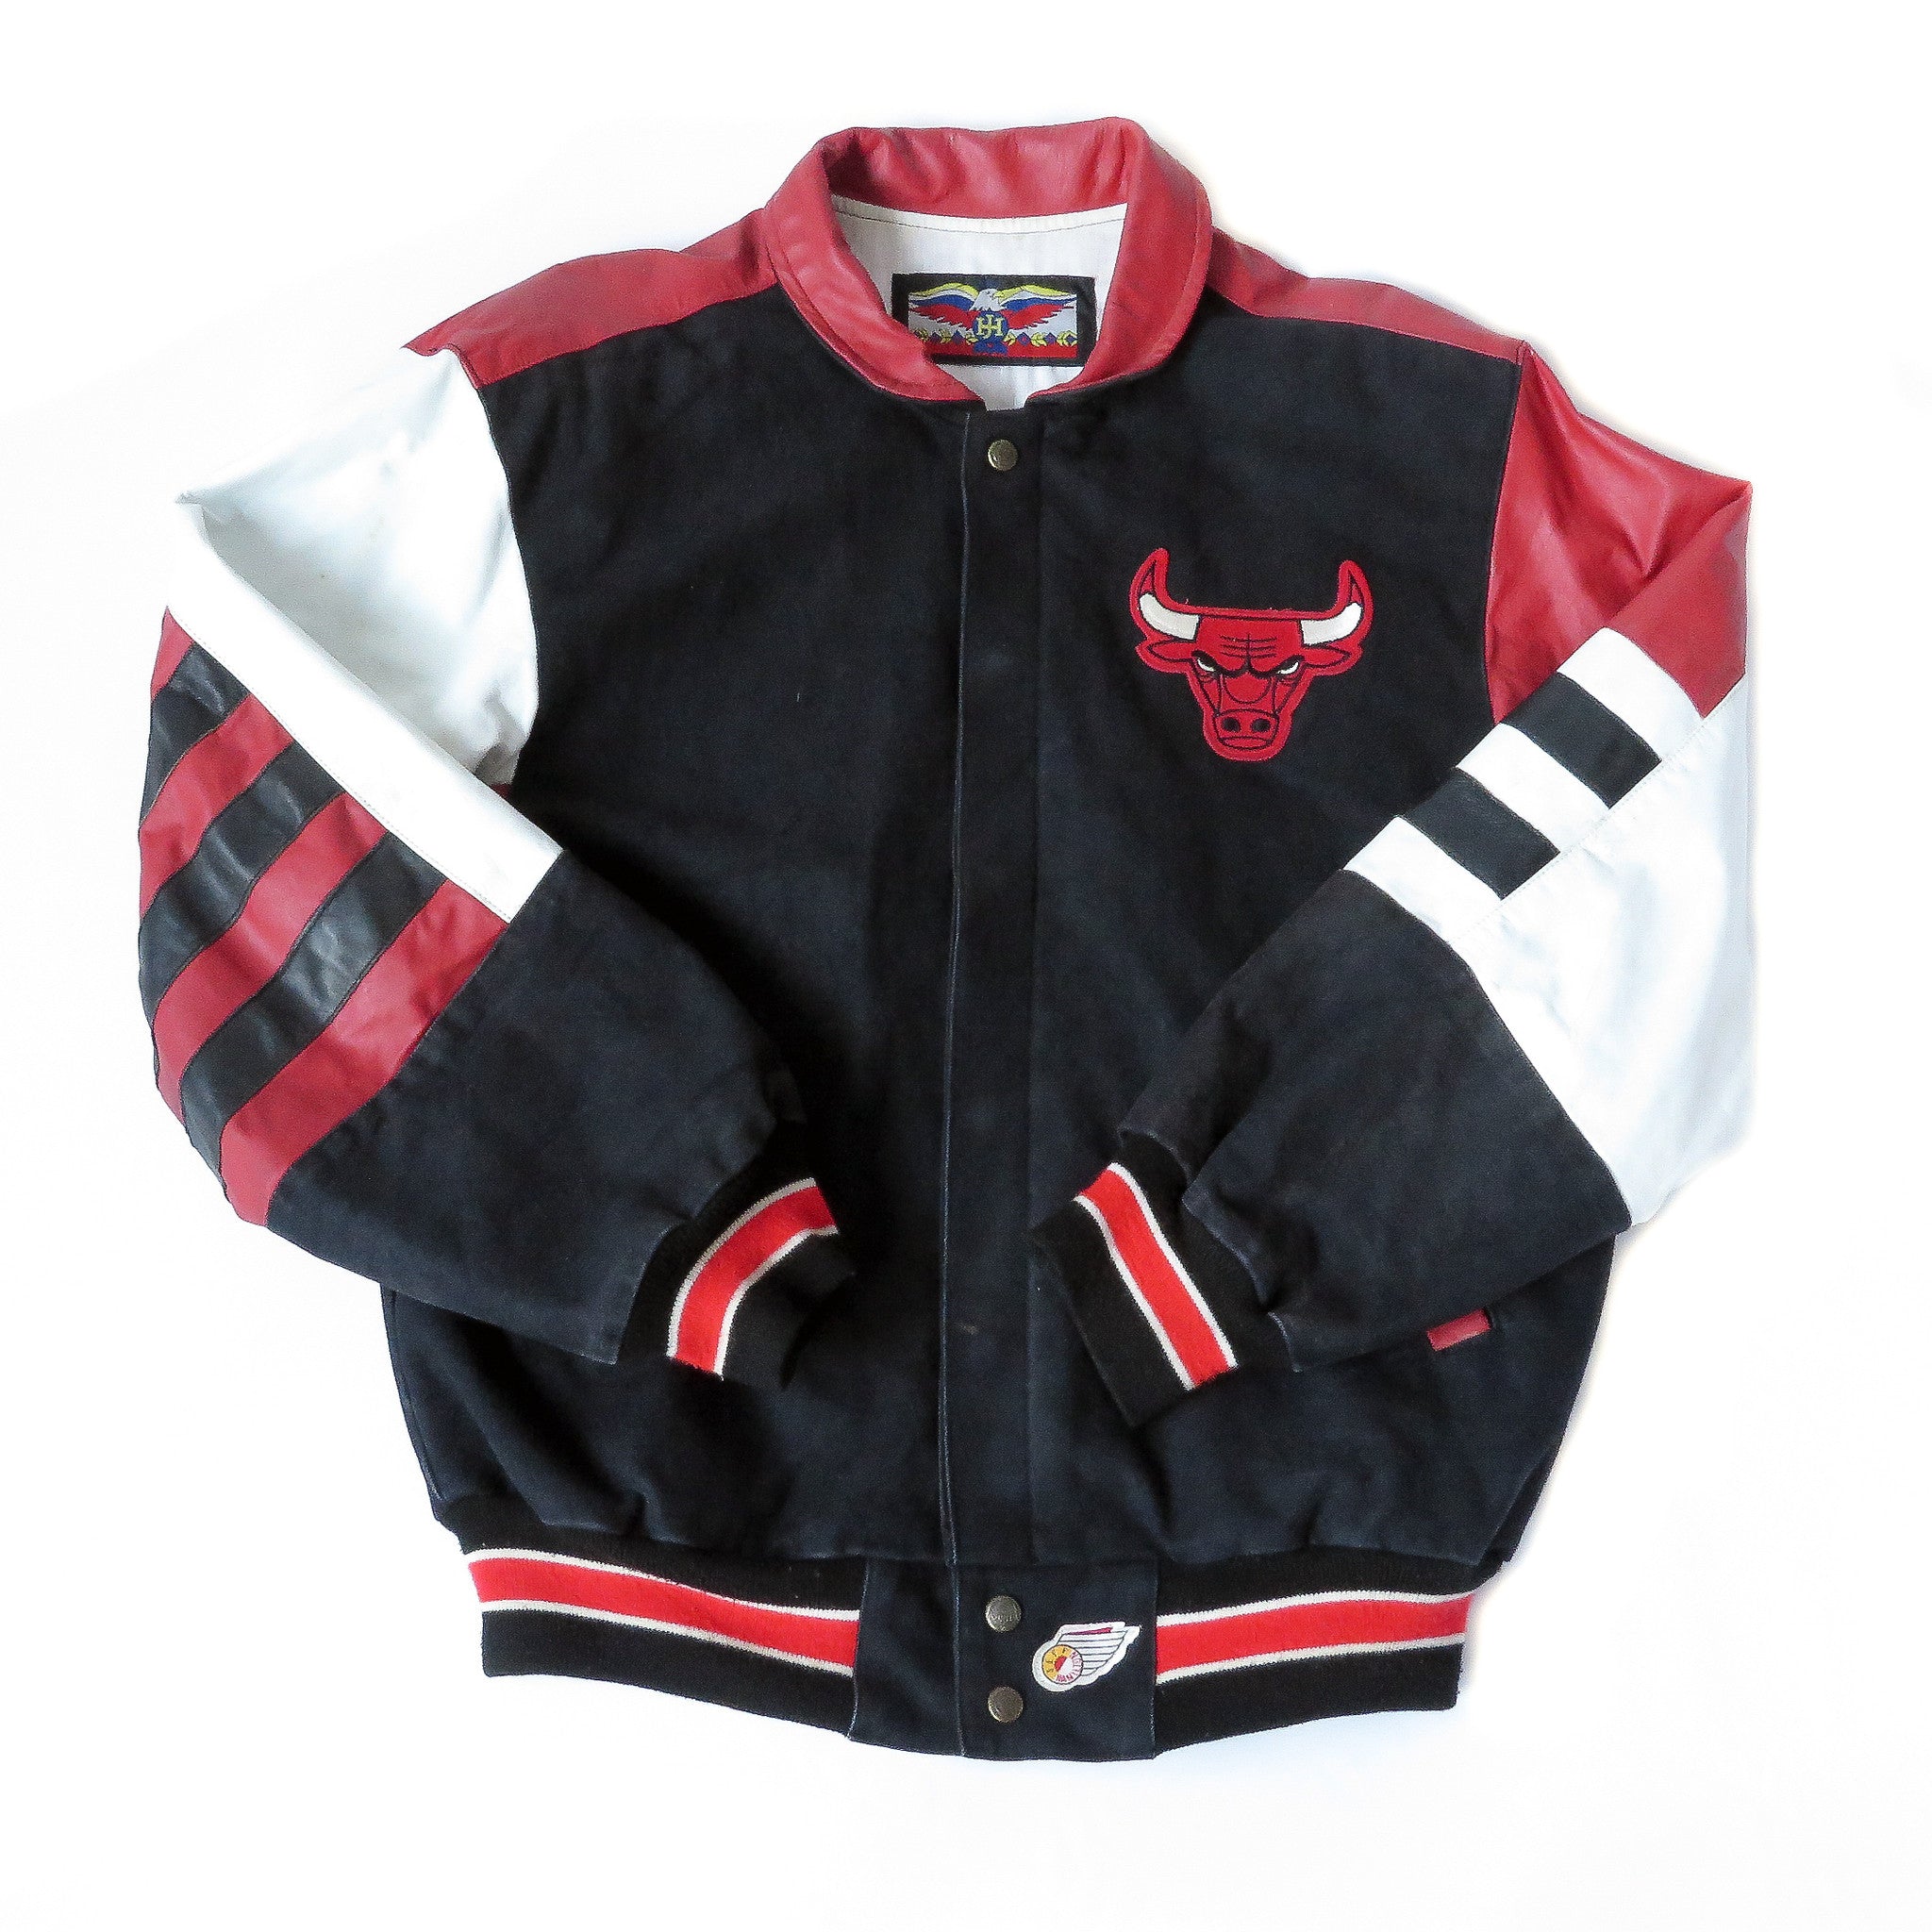 Vintage Chicago Bulls Leather Jeff Hamilton Jacket Sz L – Snap Goes My Cap